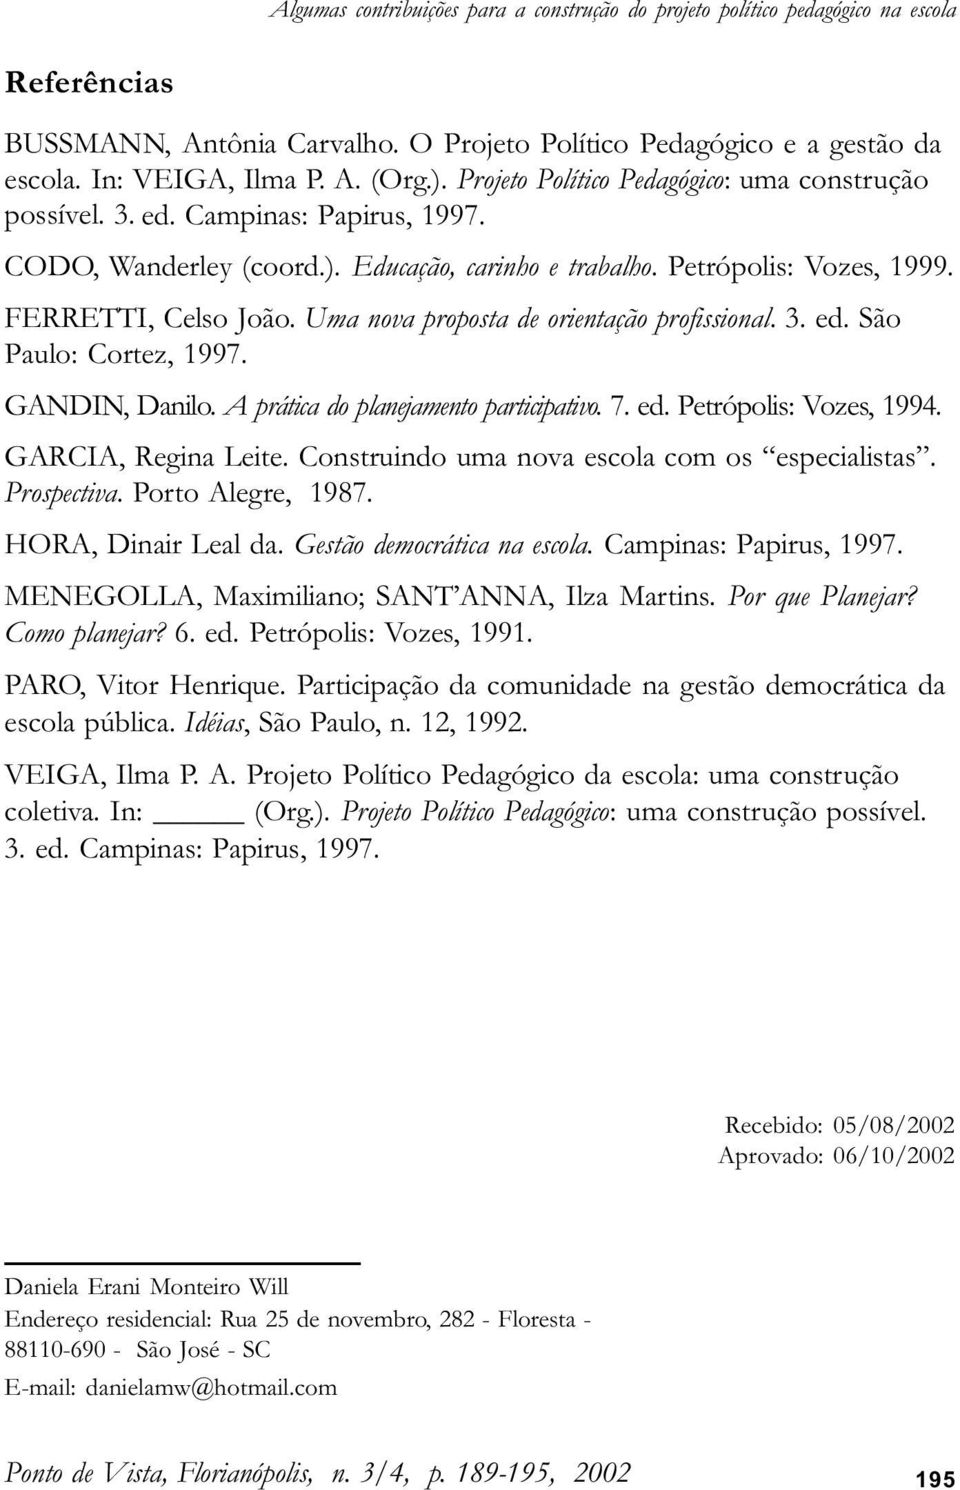 Uma nova proposta de orientação profissional. 3. ed. São Paulo: Cortez, 1997. GANDIN, Danilo. A prática do planejamento participativo. 7. ed. Petrópolis: Vozes, 1994. GARCIA, Regina Leite.